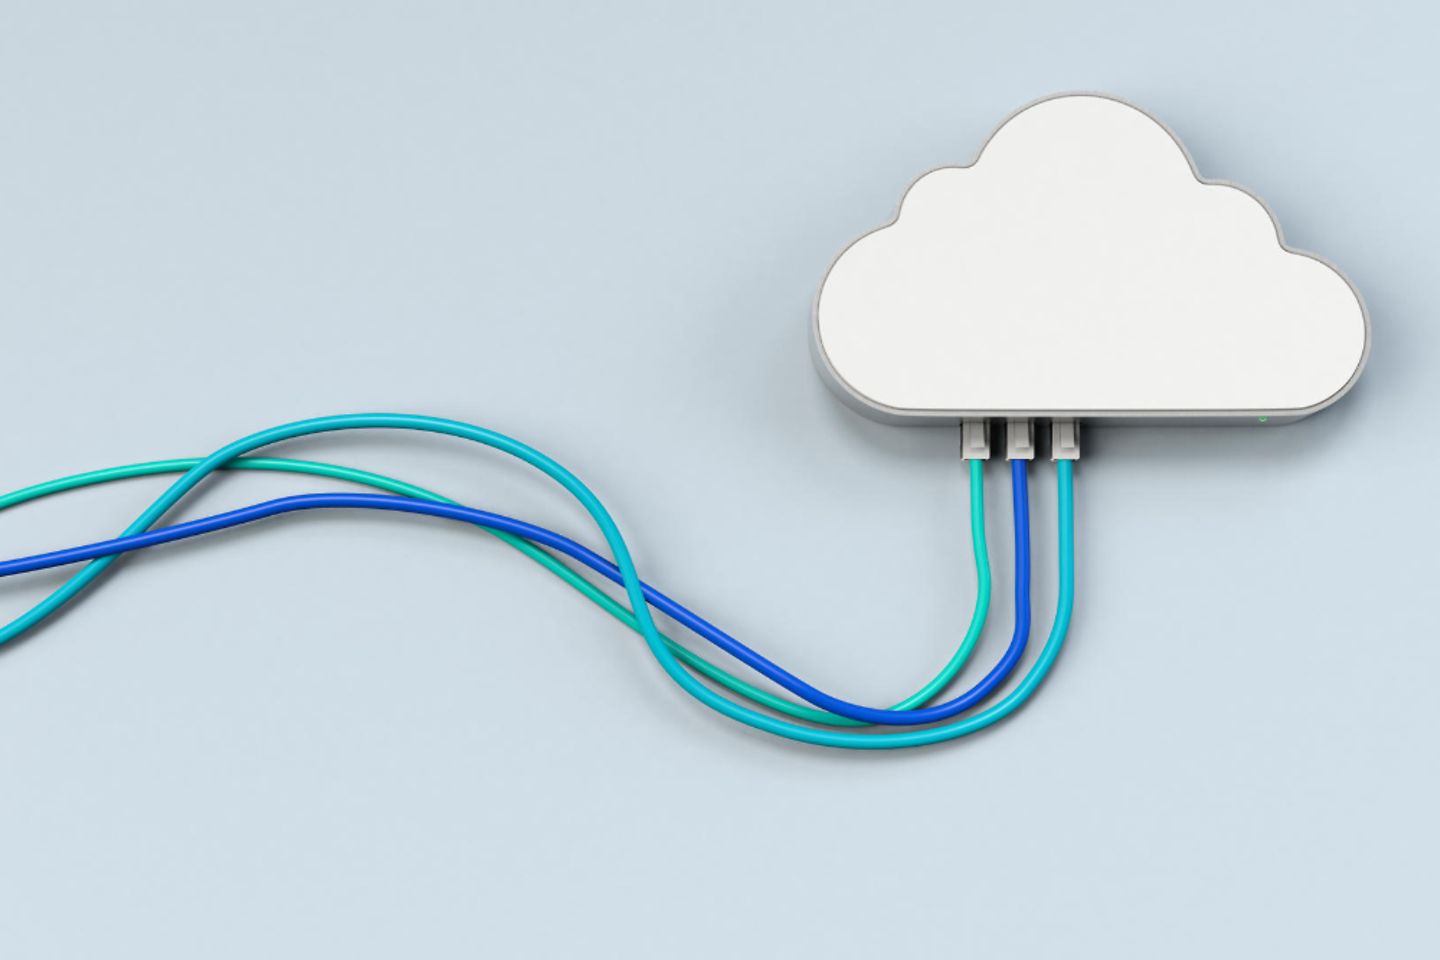 Wolkenförmige Computerfestplatte mit drei Kabeln, die aus ihr herauskommen, auf einem blauen Hintergrund